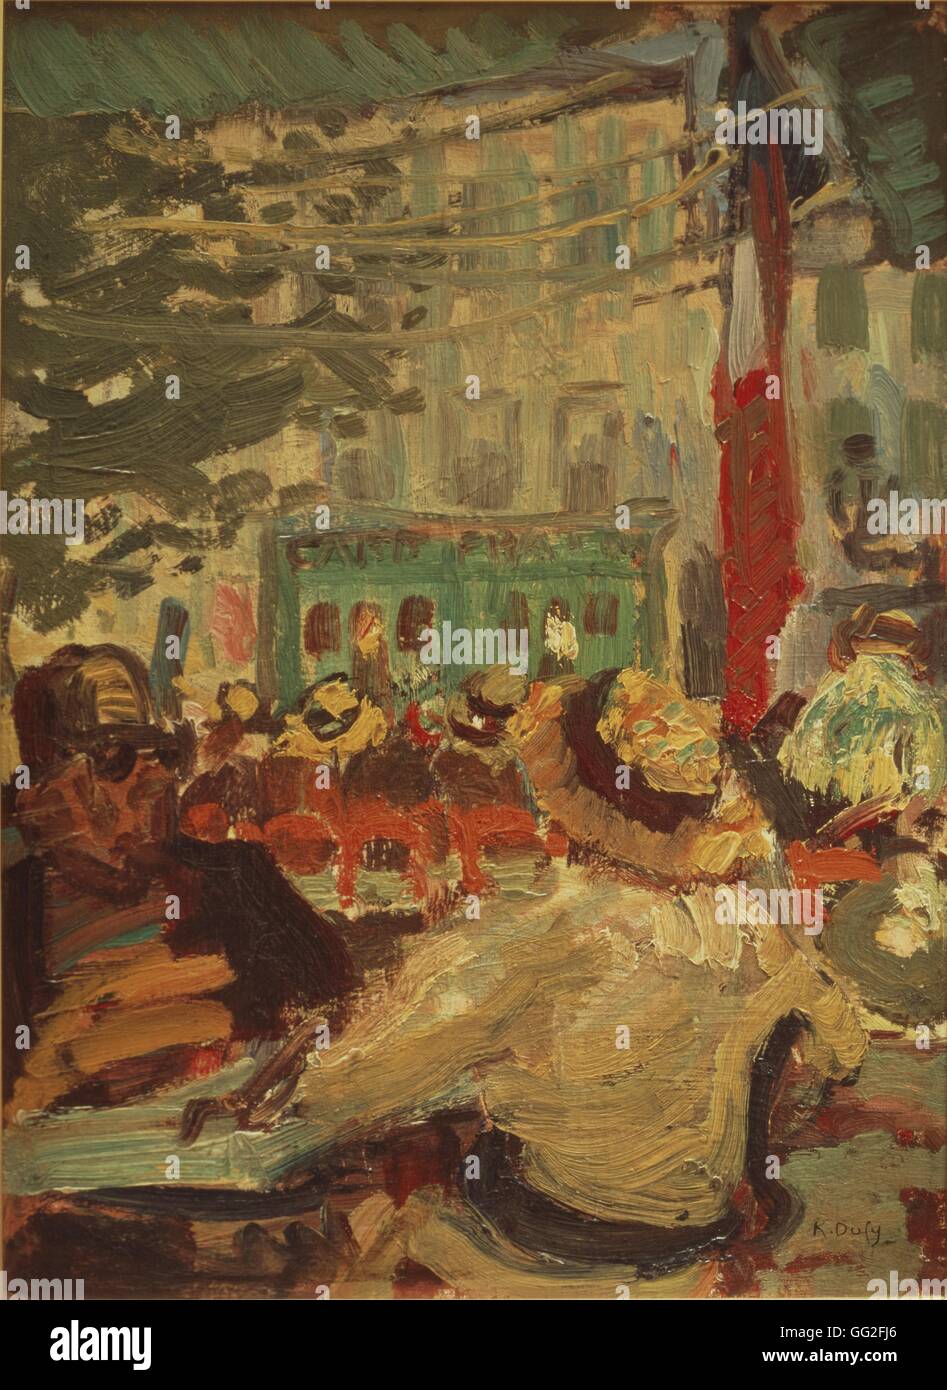 Raoul Dufy (1877 - 1953) peintre fauviste français. Terrasse de café à Martigues (près de Marseille) 1904 Huile sur carton (33 x 24 cm), musée Ziem de Martigues (France) Banque D'Images